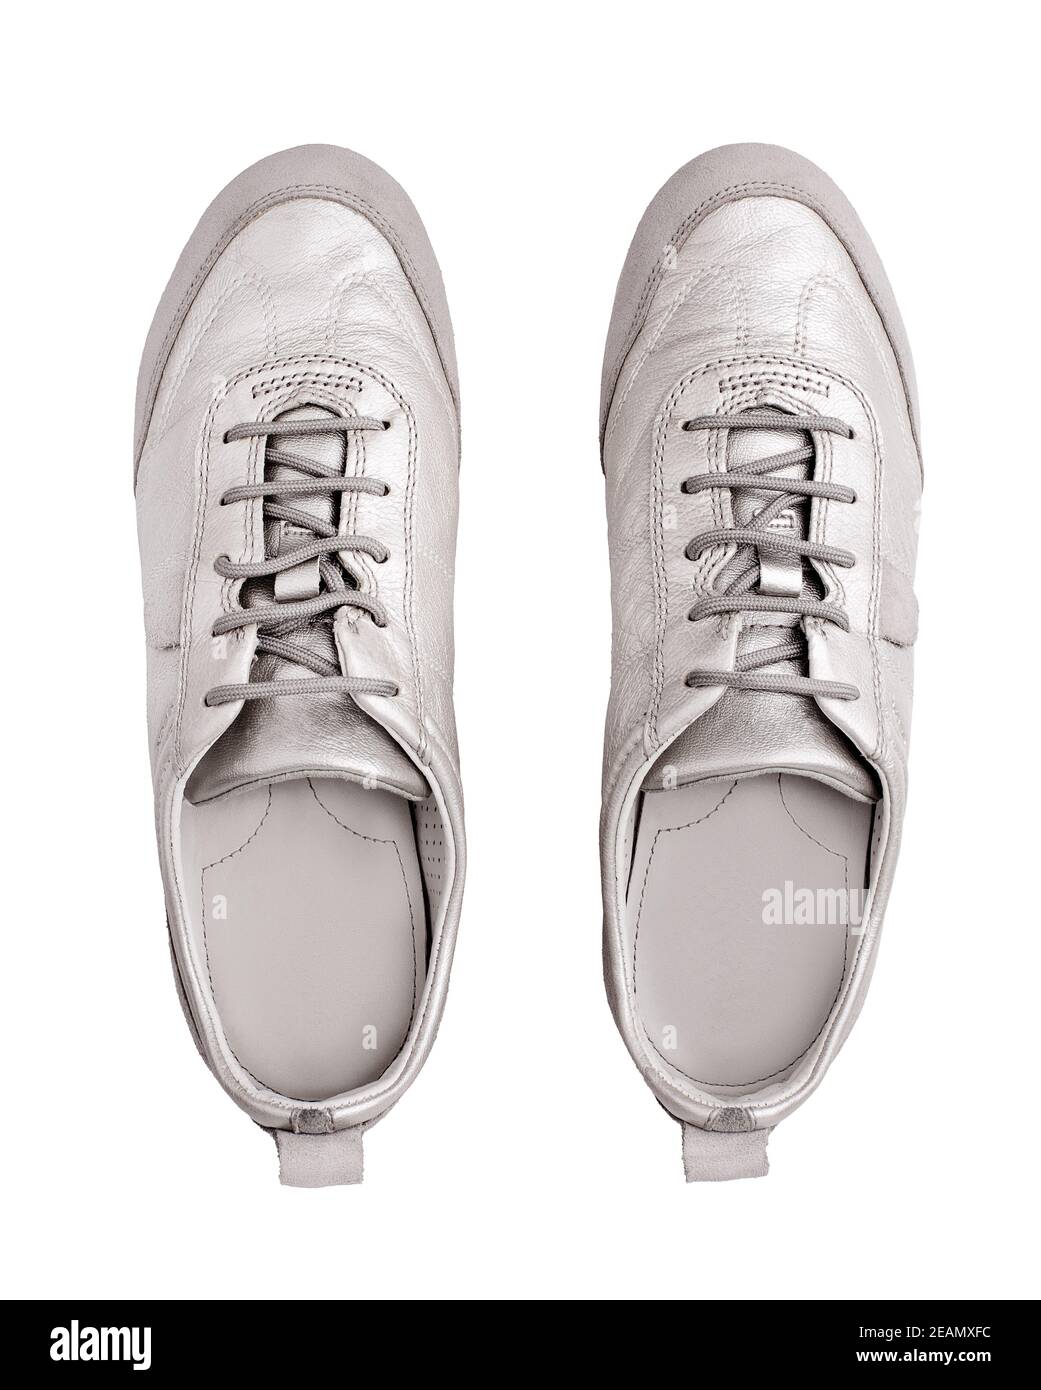 Silberne Leder Sneakers weißen Hintergrund isoliert Nahaufnahme von oben,  stilvolle hellgraue Wildleder Gummischuhe, Paar beige Schuhe mit  Schnürsenkeln, Sitzstiefel Stockfotografie - Alamy